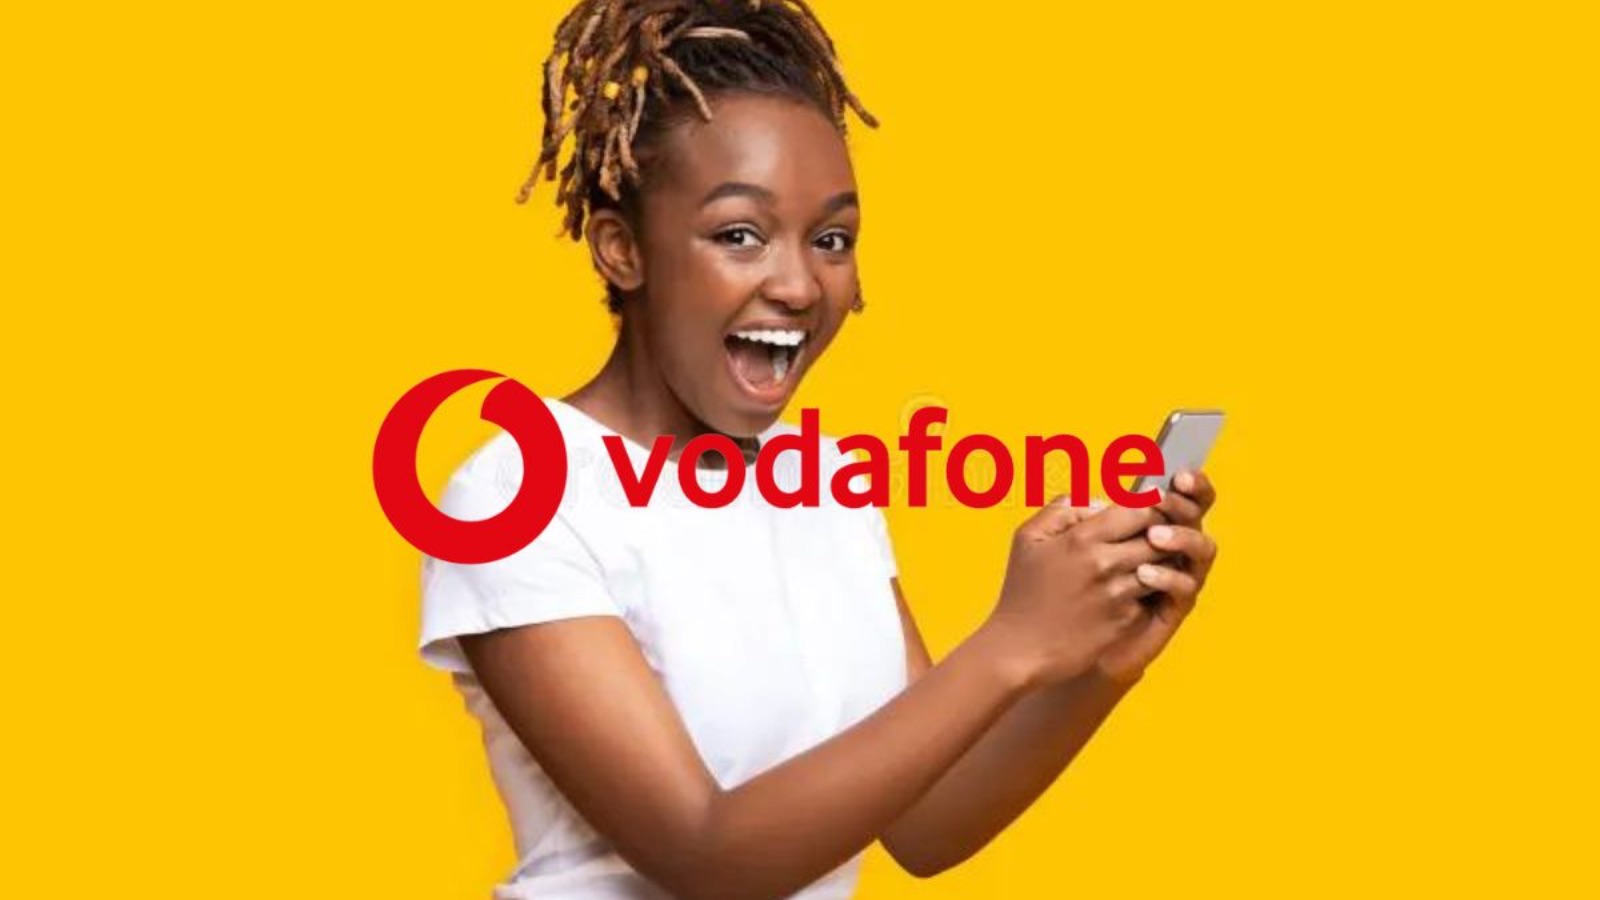 Scegli queste OFFERTE di Vodafone per avere fino a 150 GB al mese